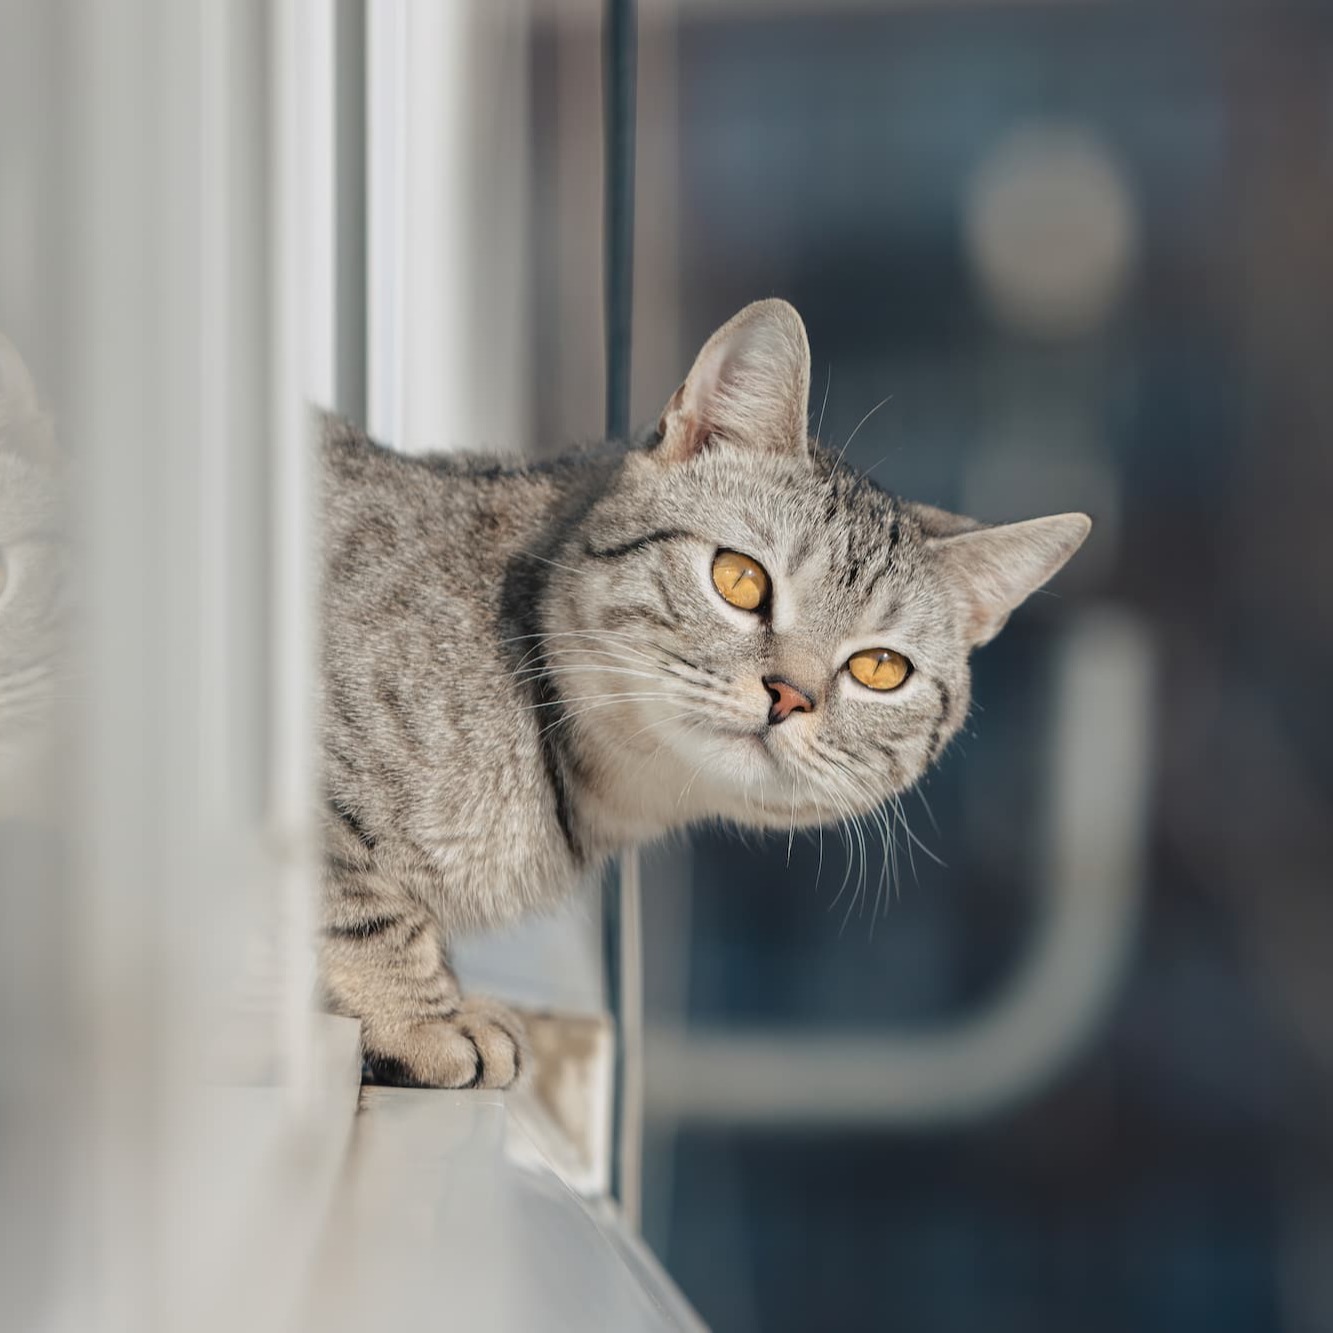 Reflecterende ogen van de kat - Aveve